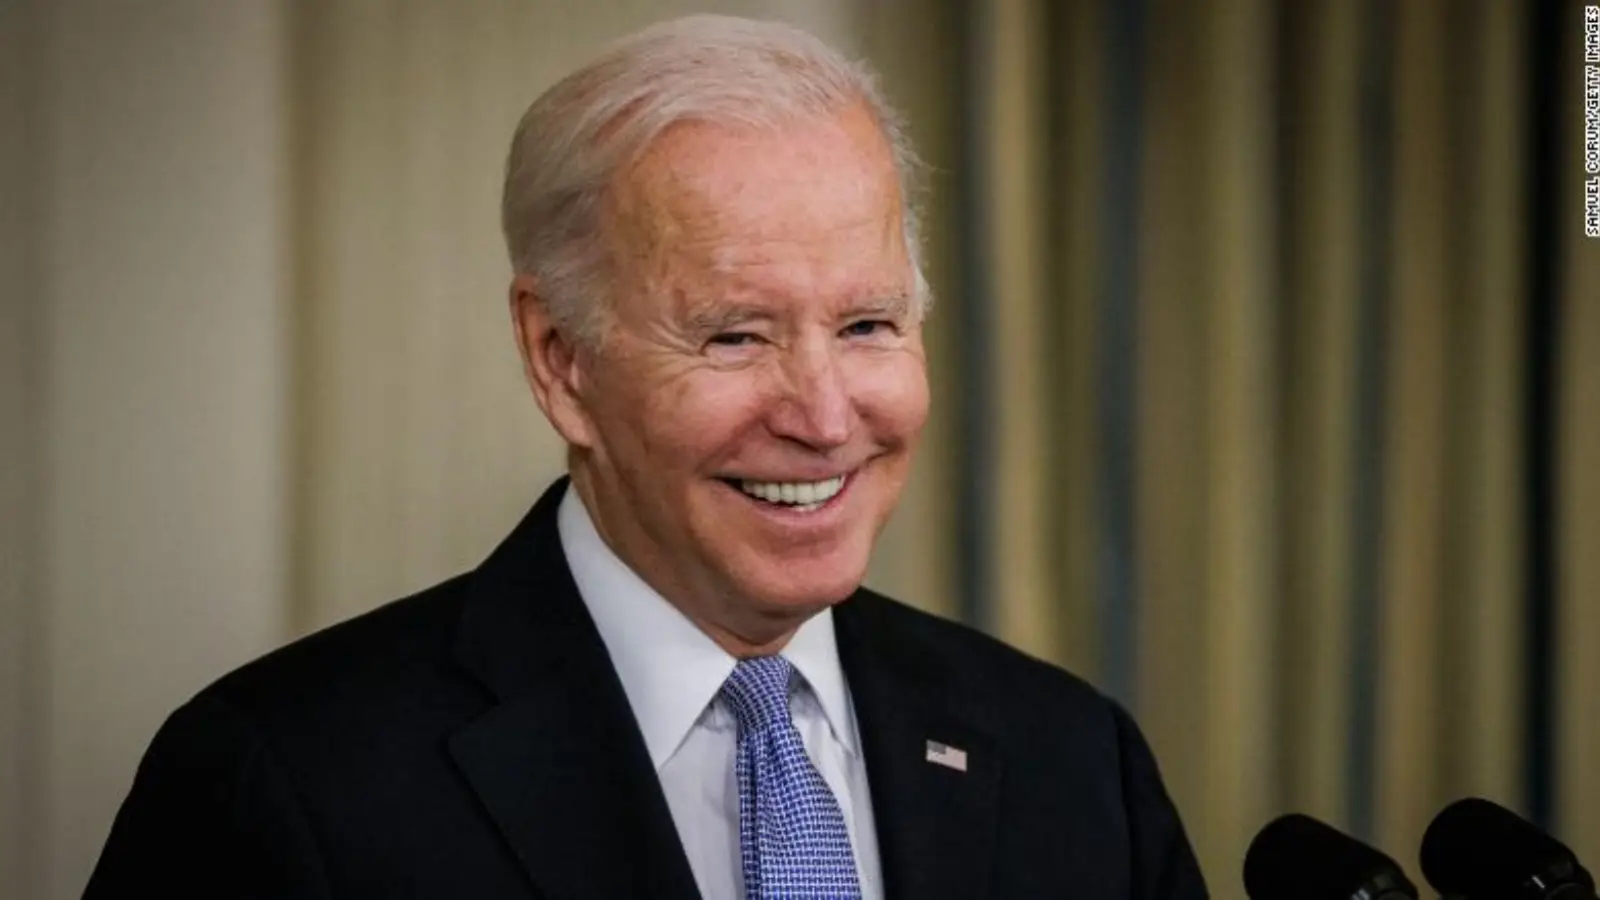 Joe Biden ha criticato aspramente la Russia in un discorso tenuto alle Nazioni Unite